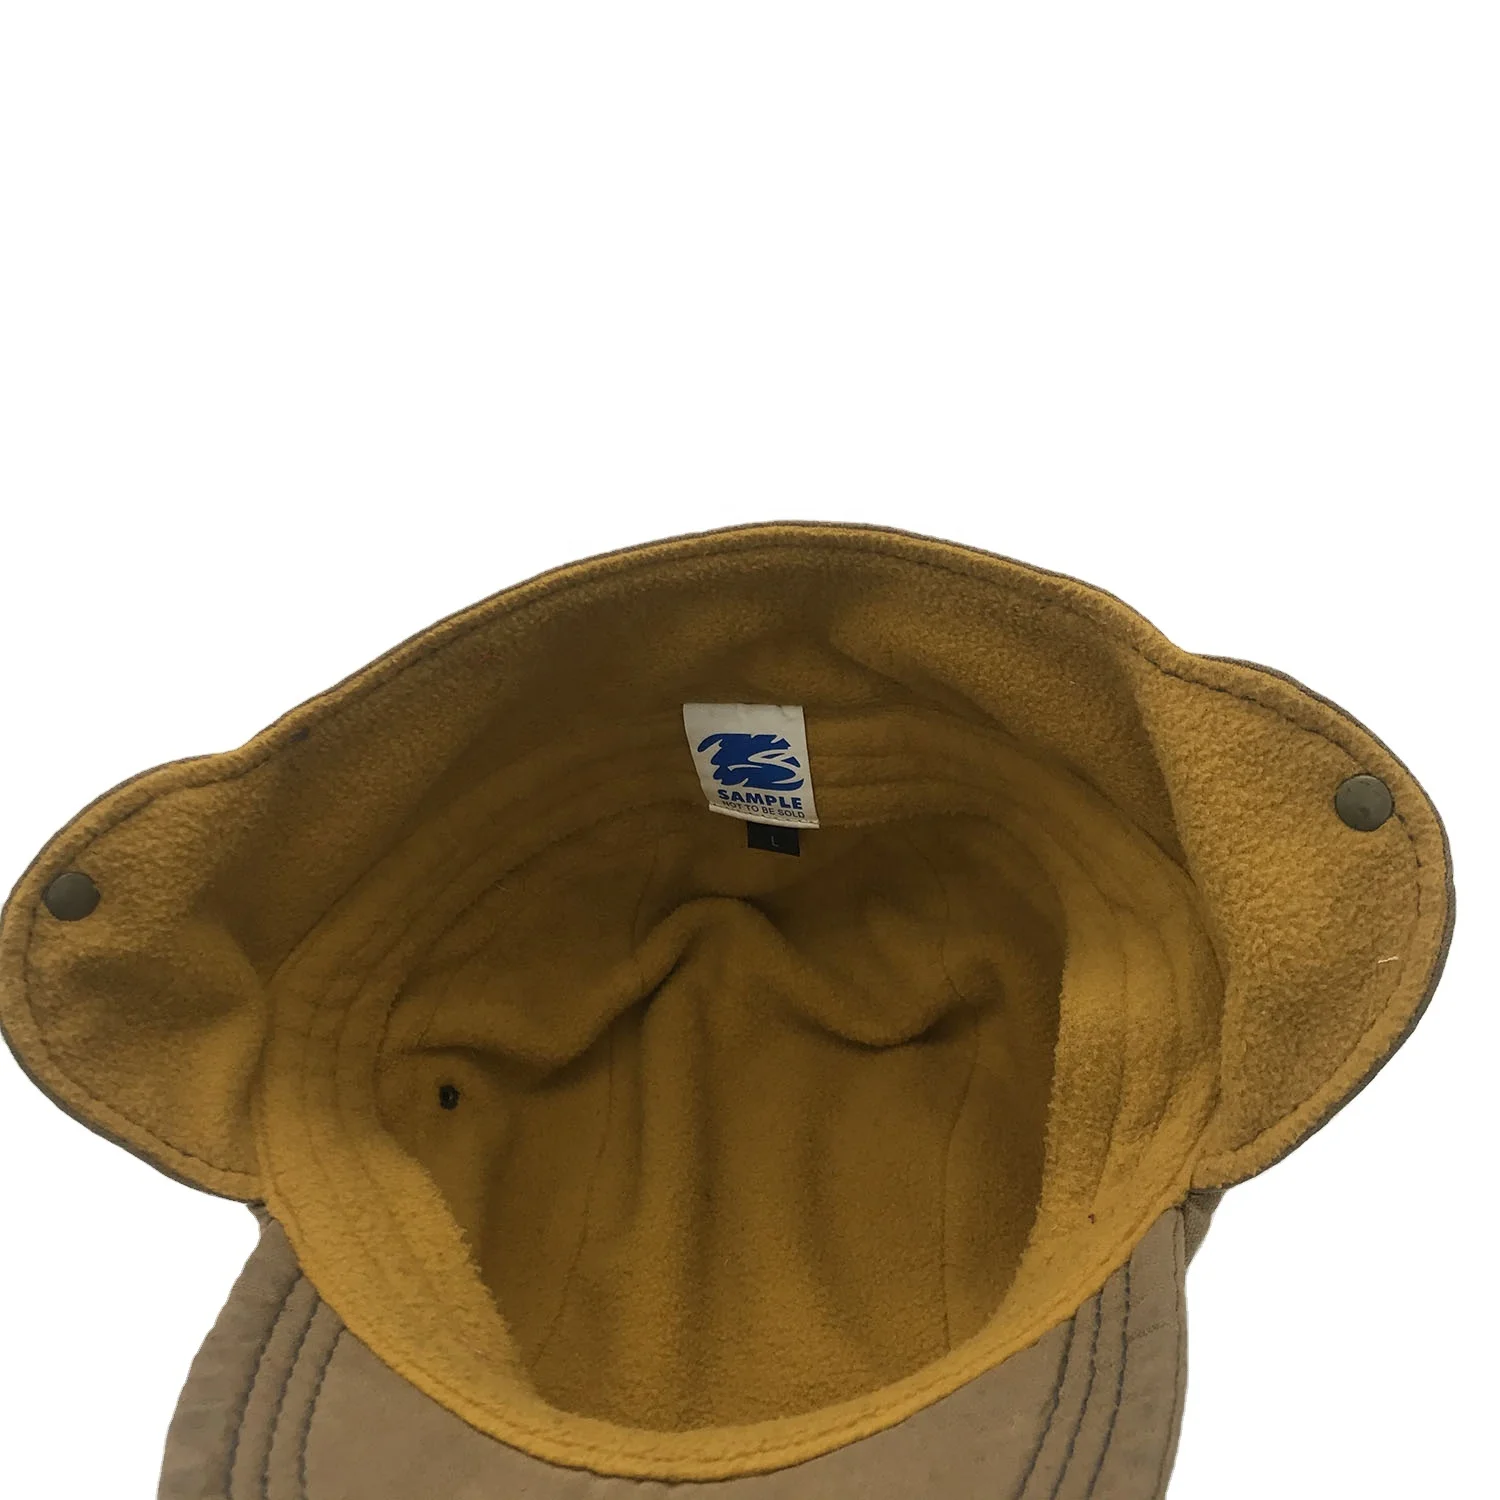  Зимняя мужская шапка-бомбер русская коричневая парусиновая Кепка с ушами меховая теплая плотная плюшевая бейсболка флисовой подкладкой и